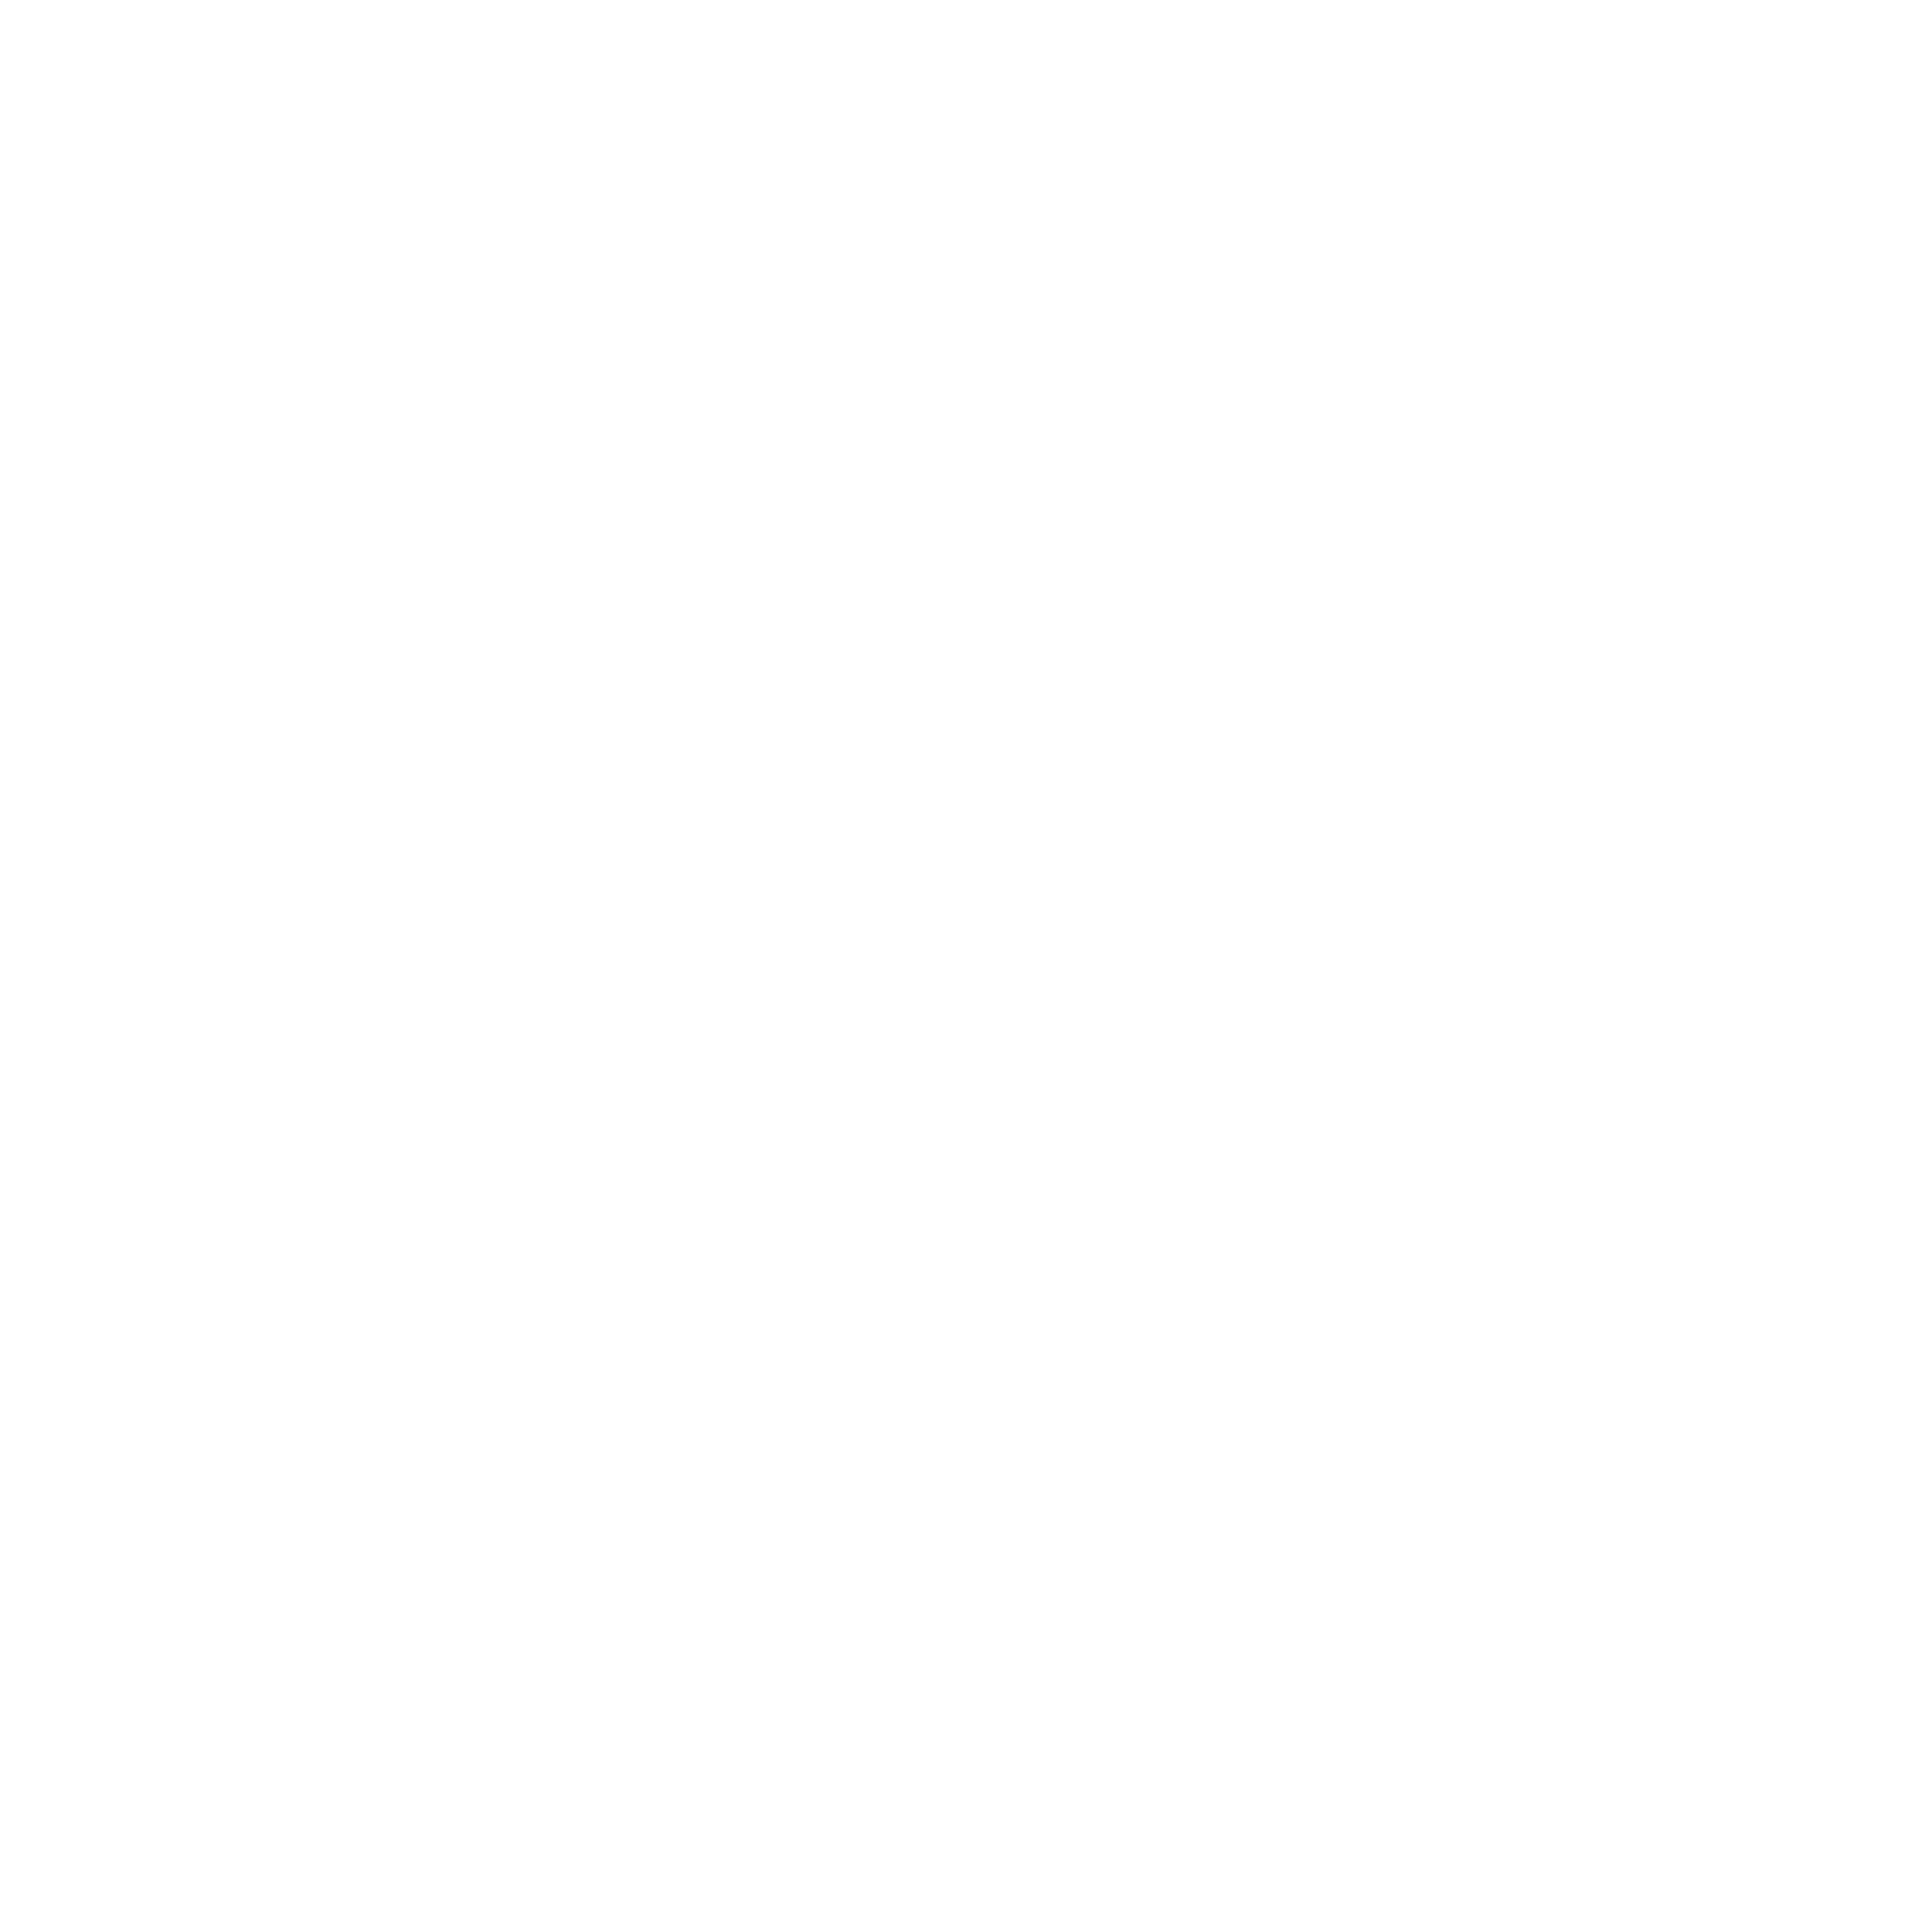 Acxiom Logo - Acxiom Logo PNG Transparent & SVG Vector - Freebie Supply